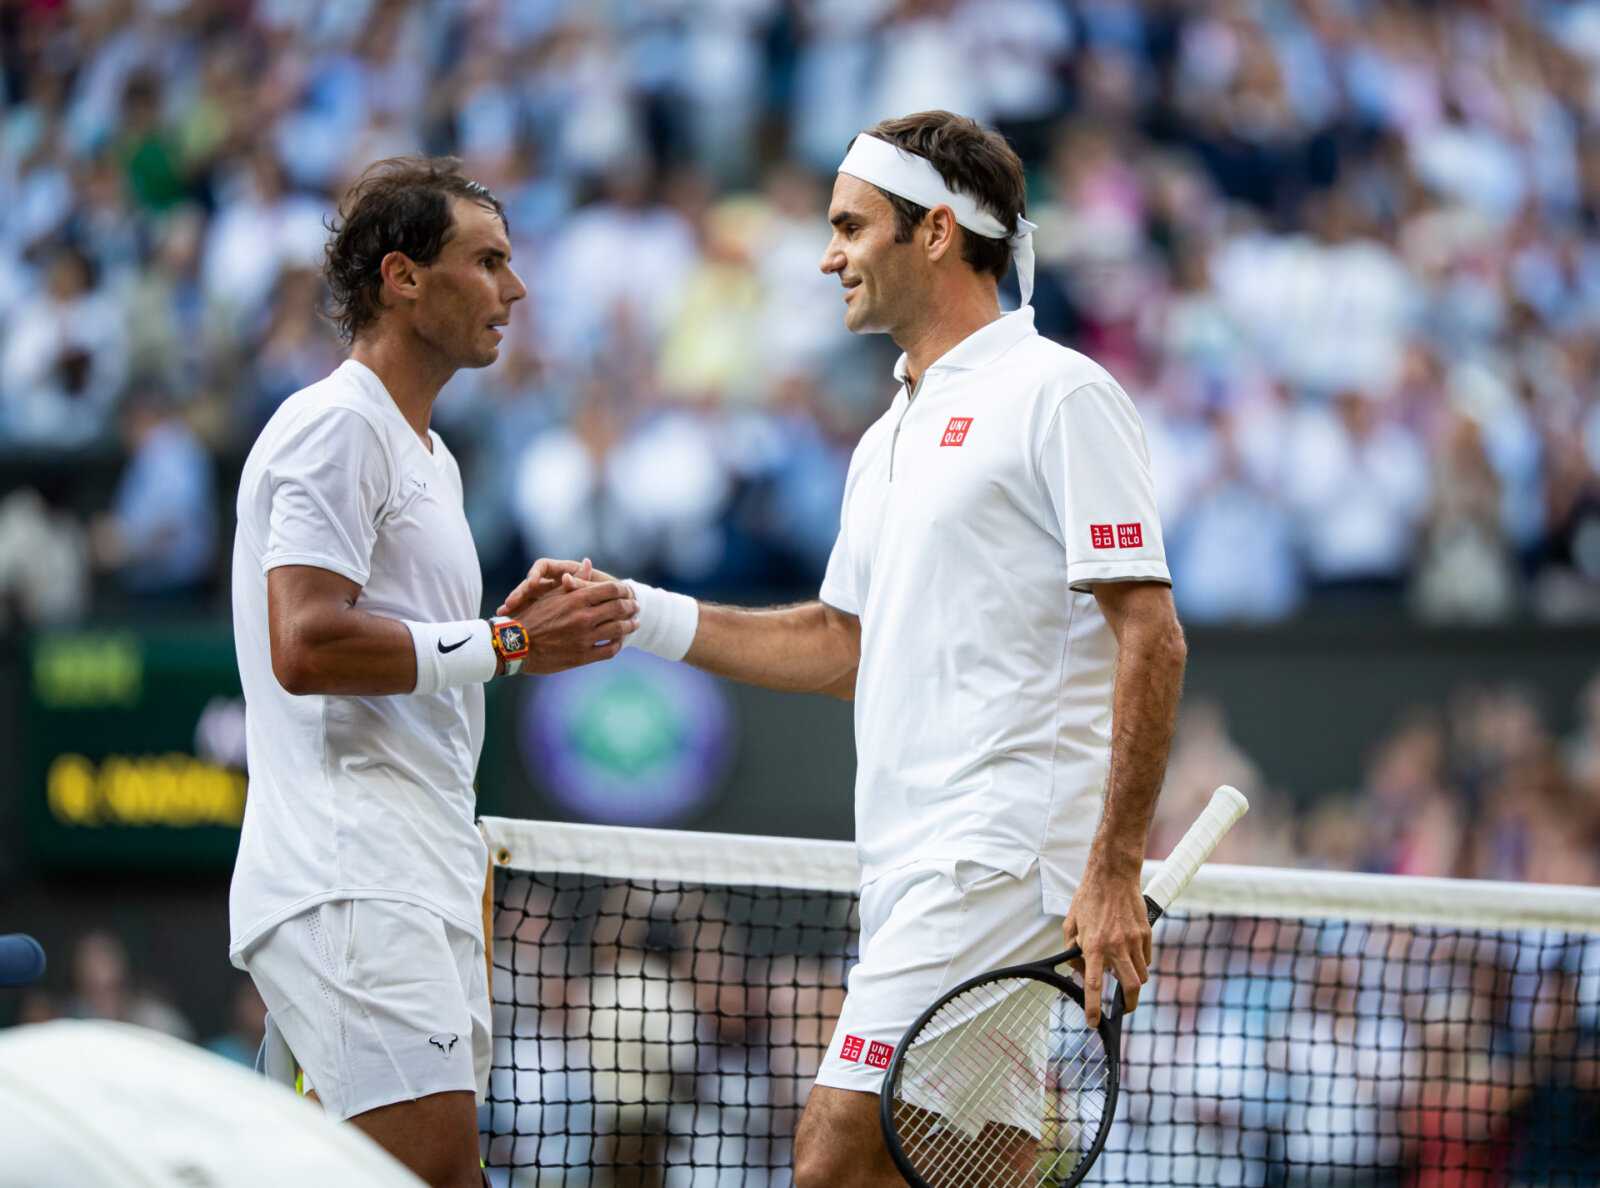 "Un match avec l'adrénaline": Rafael Nadal se souvient de la bataille historique avec Roger Federer à Wimbledon